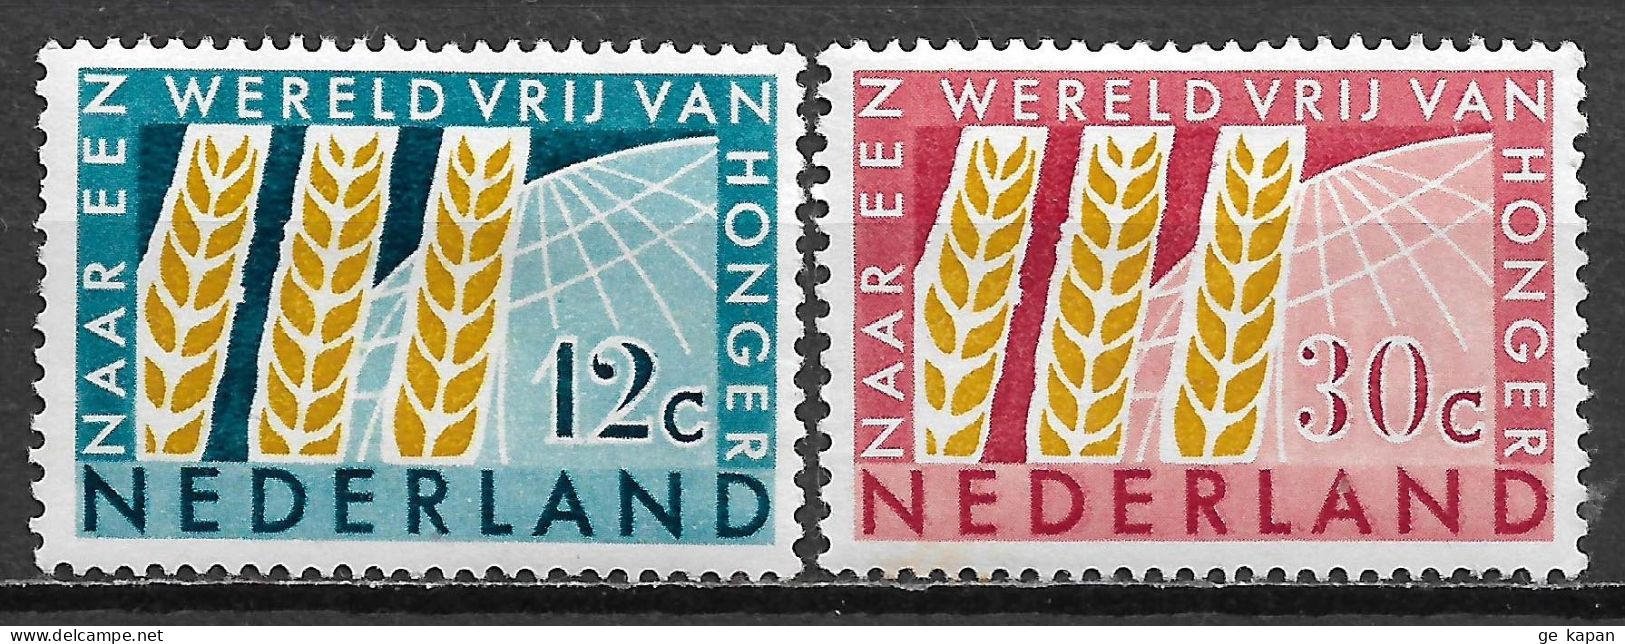 1963 NETHERLANDS Complete Set Of 2 MVLH STAMPS (Michel # 791,792) CV €1.50 - Nuovi